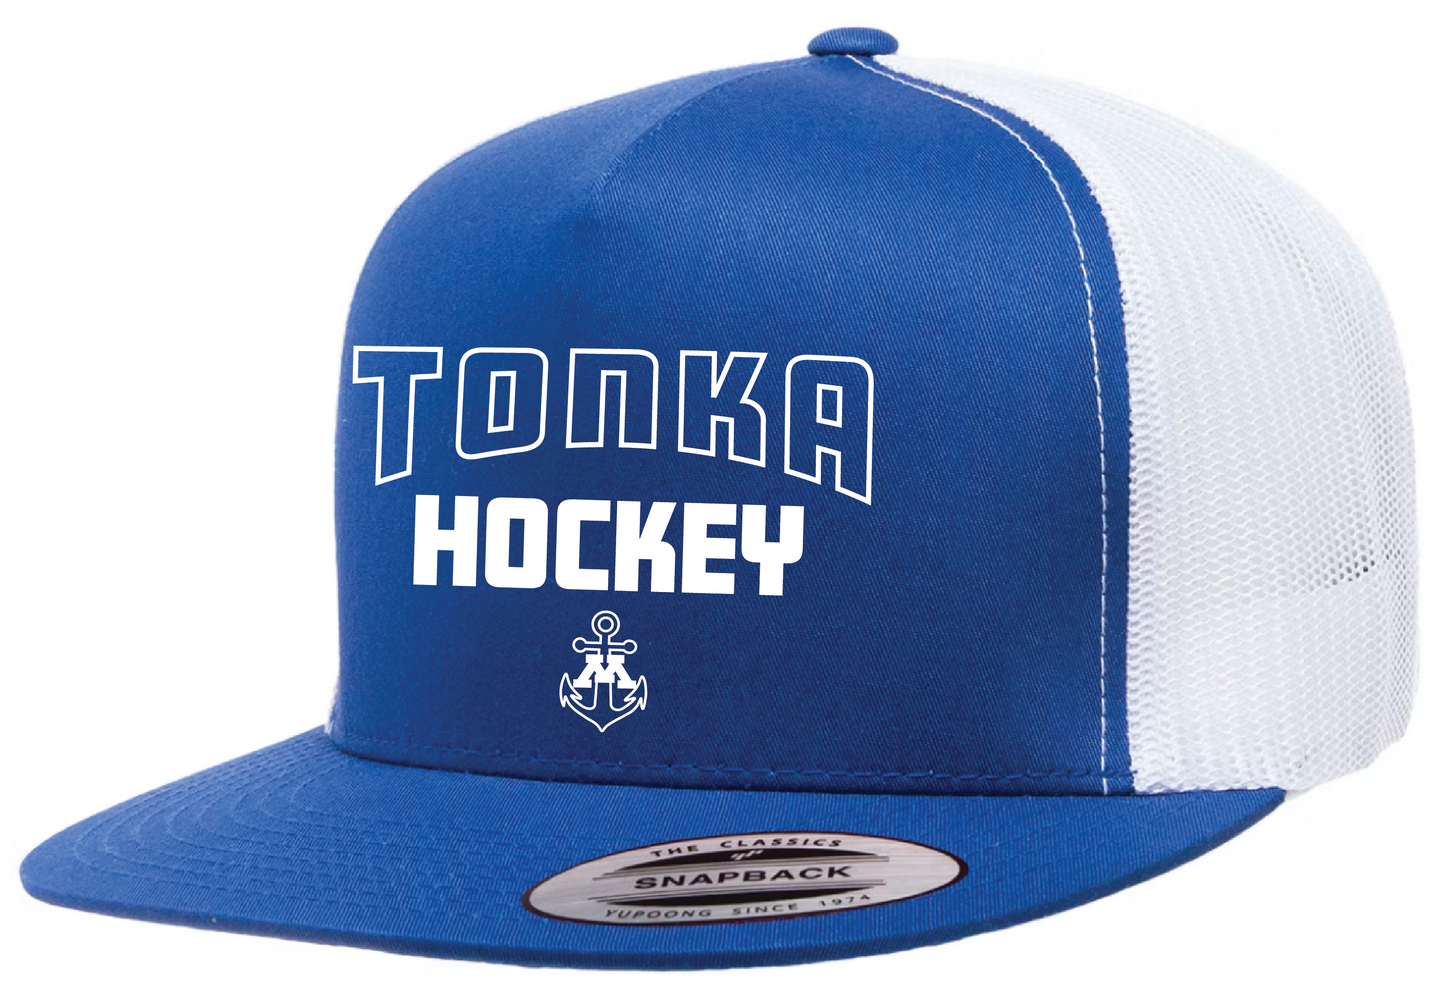 Tonka Hockey Small Anchor Royal/White